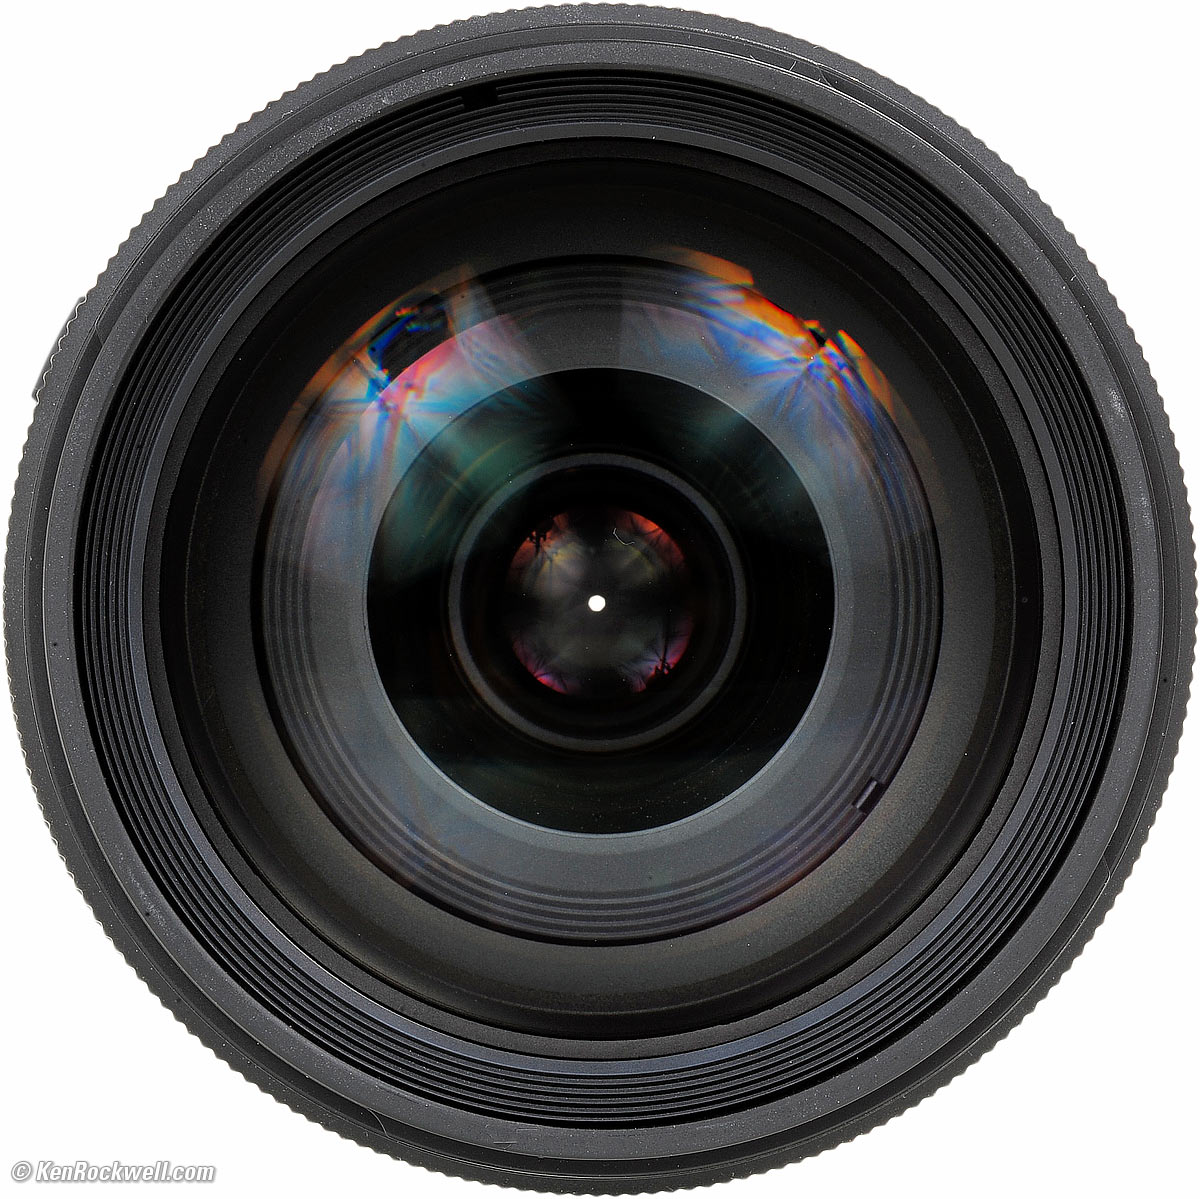 カメラ レンズ(ズーム) Sony 28-75mm f/2.8 Review